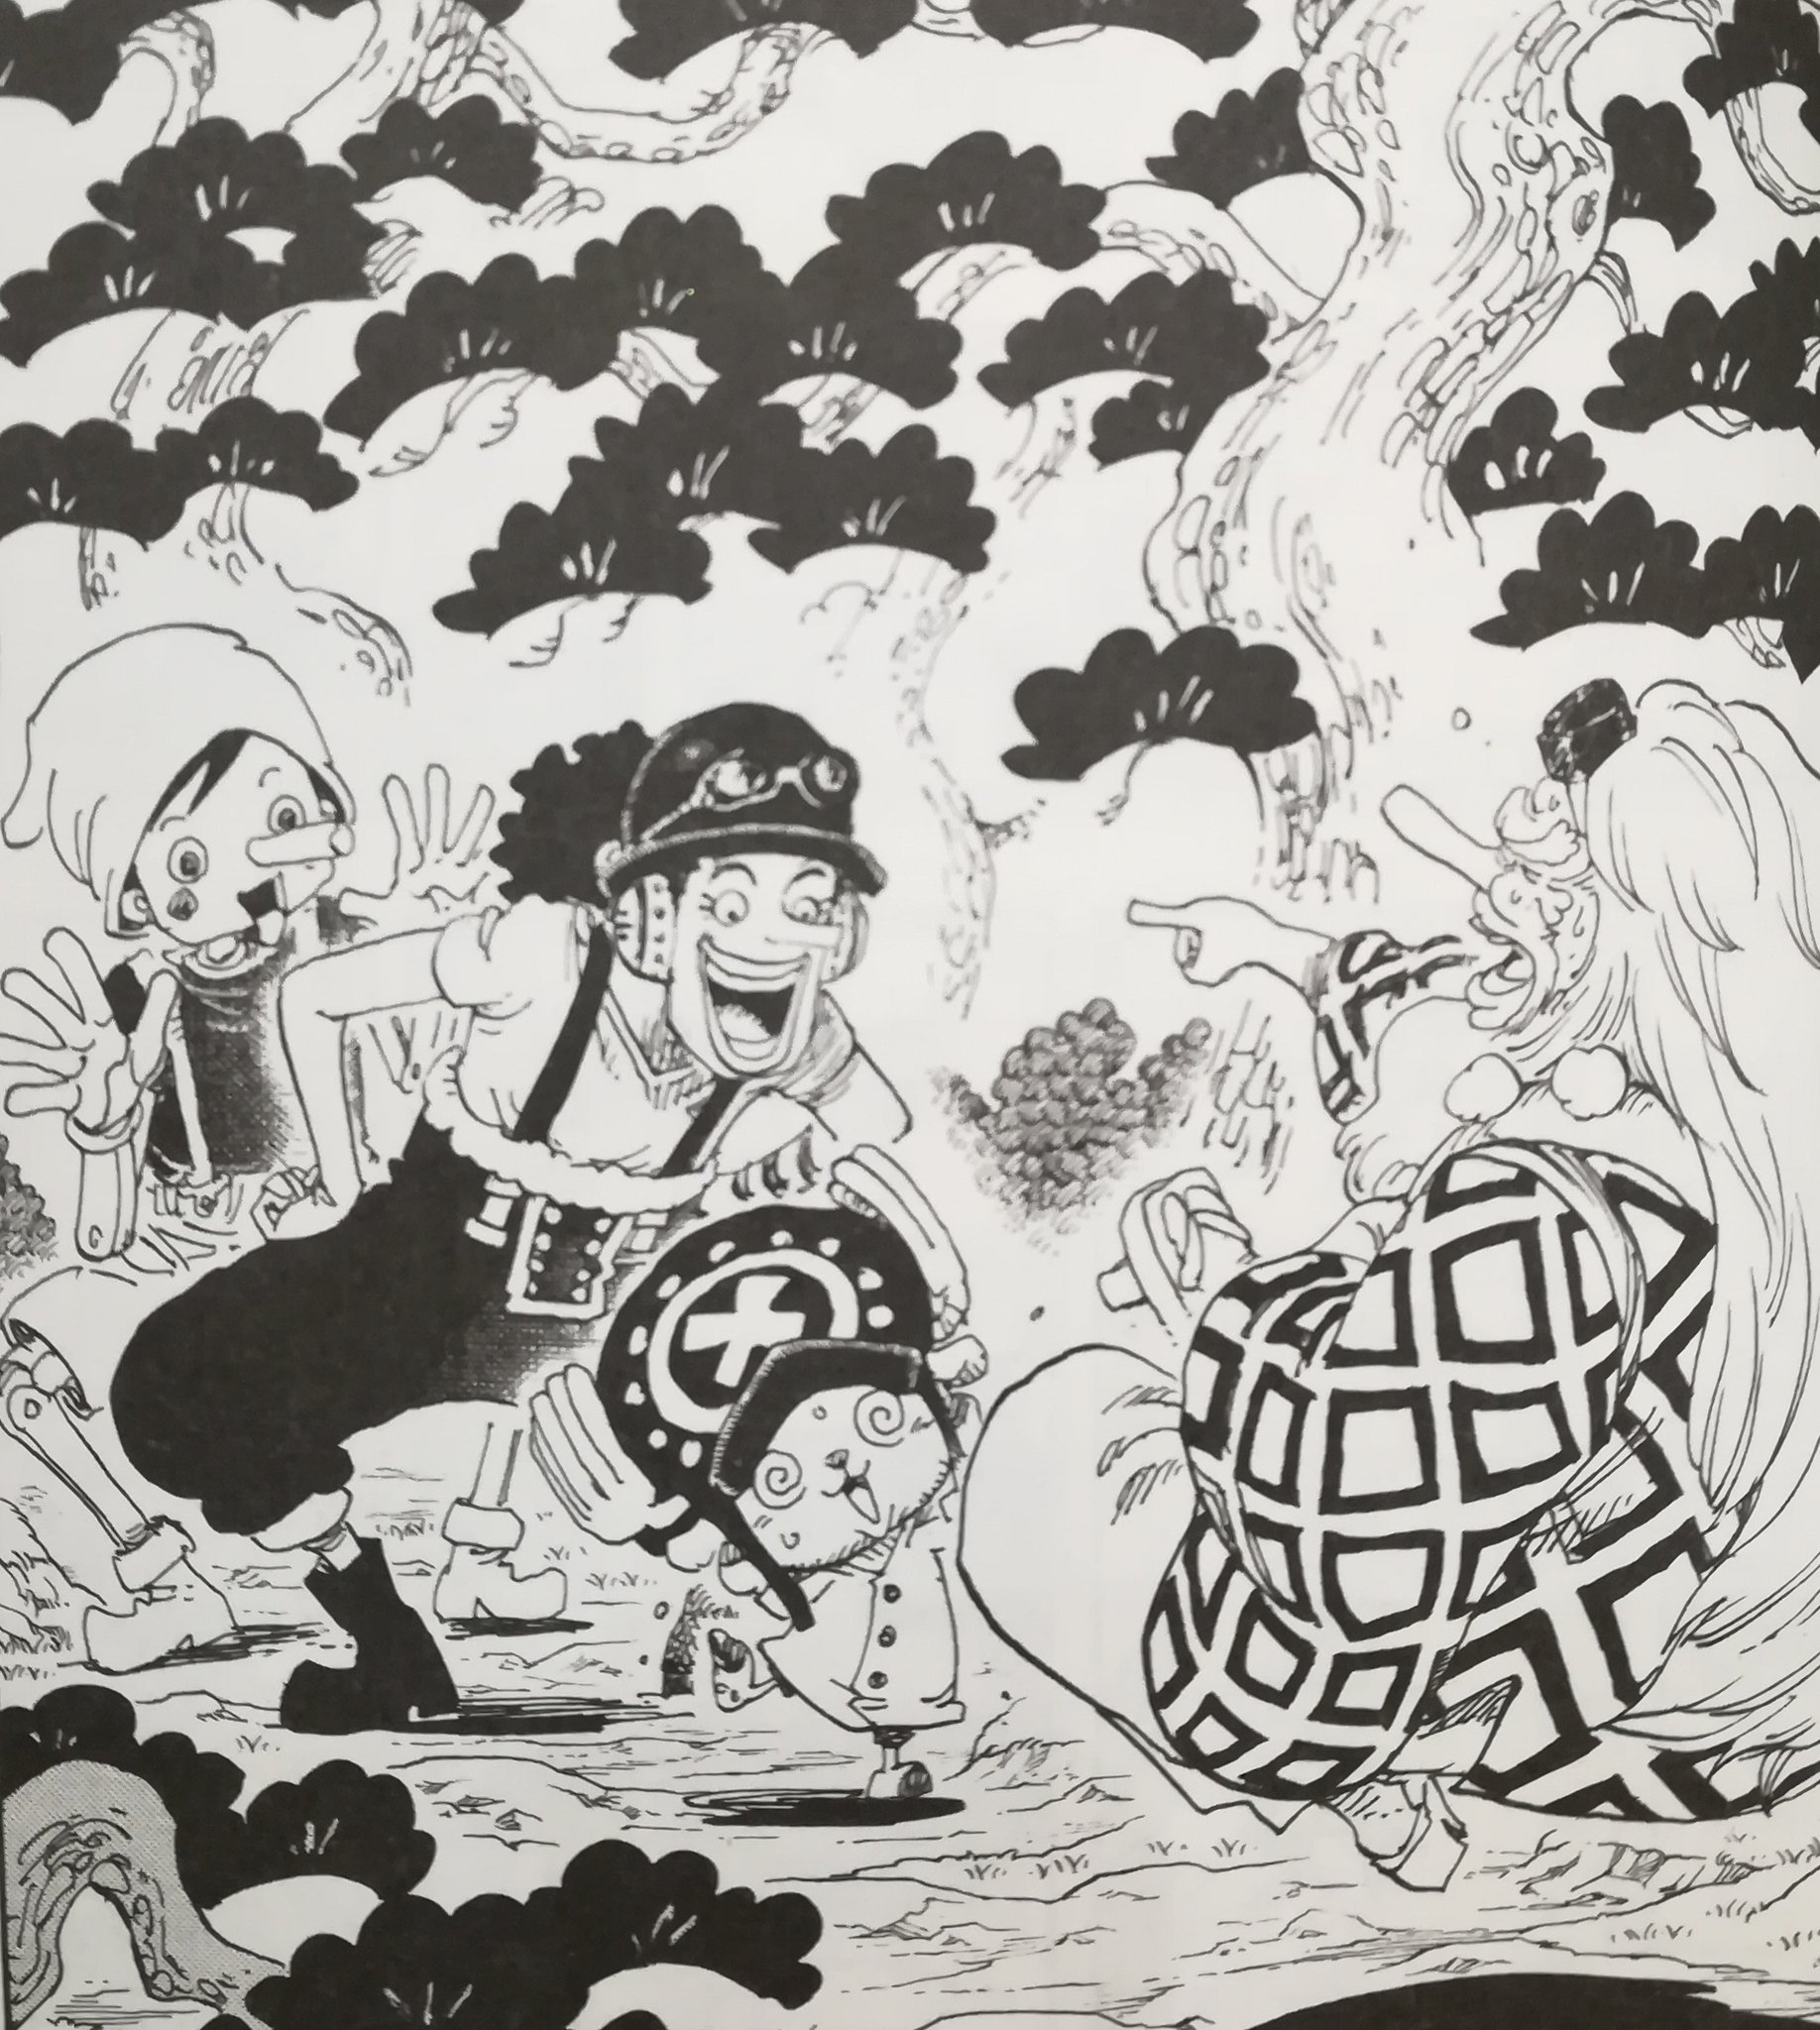 One Pieceが大好きな神木 スーパーカミキカンデ ワノ国の松は793話でもそれっぽいのが描かれてますねー その時に描いたやつ One Piece 第910話 感想 神木健児 Onepiece Kun Note ノート T Co Vm0kenqkbd T Co